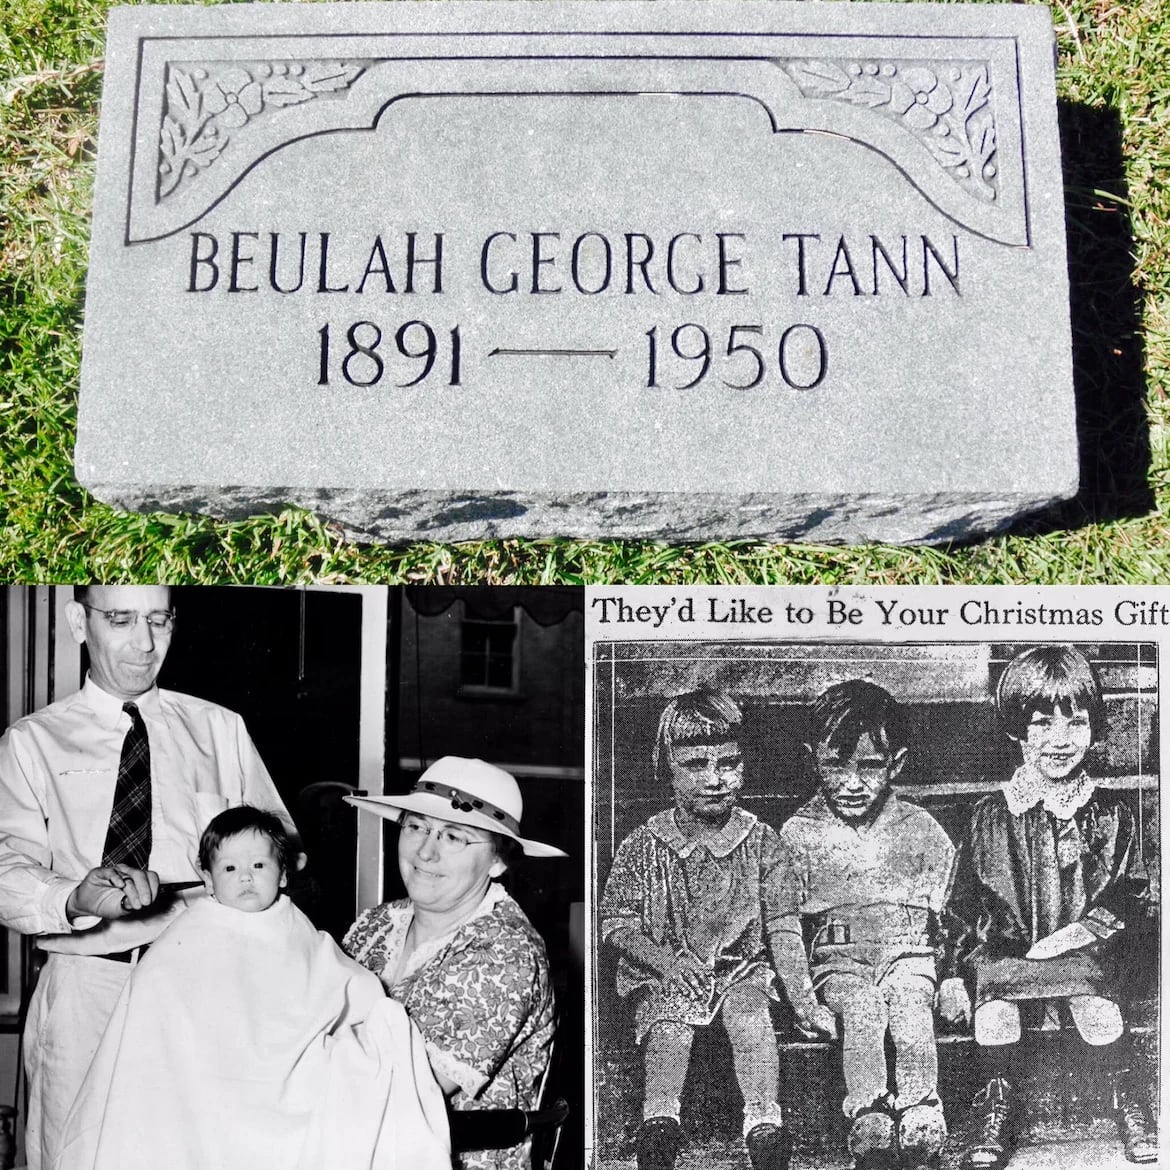 Imagen de la tumba de Tann, quien moriría de cáncer de útero en 1950. Debajo, preparando a un niño para darlo en adopción y a la derecha un anuncio navideño que motivaba a adoptar un niño como regalo festivo